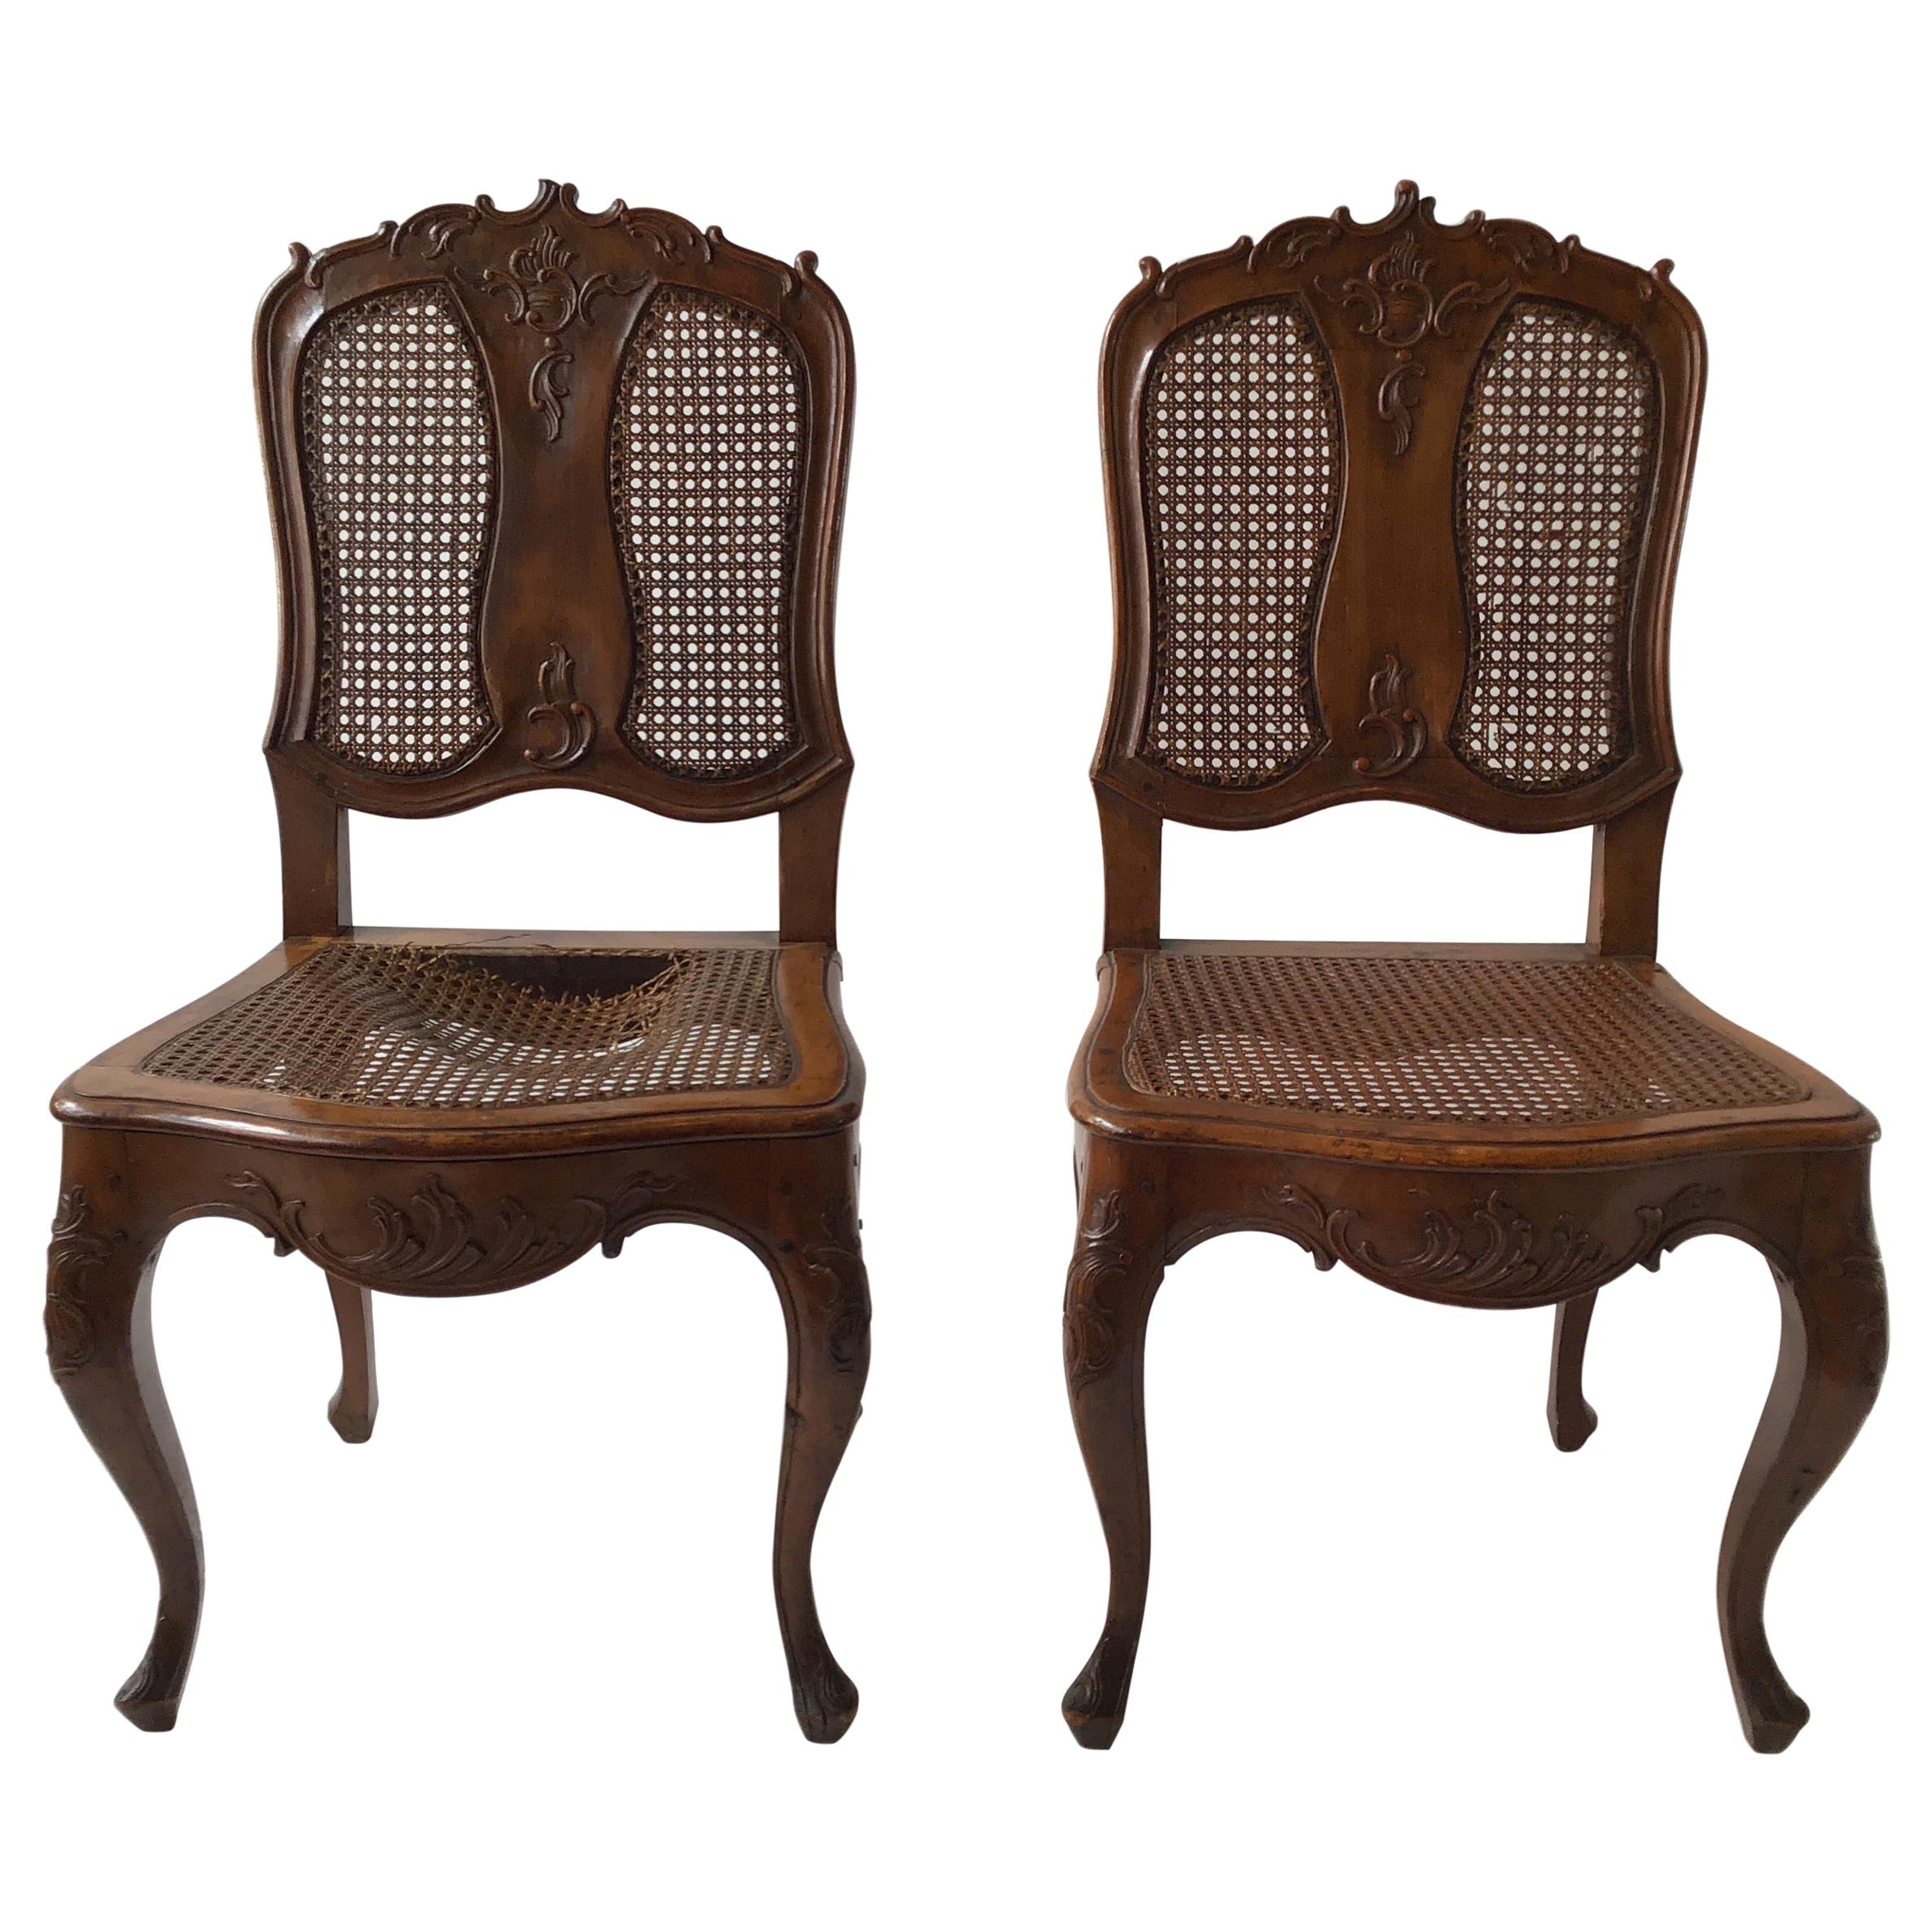 Paar handgeschnitzte französische Beistellstühle aus den 1880er Jahren